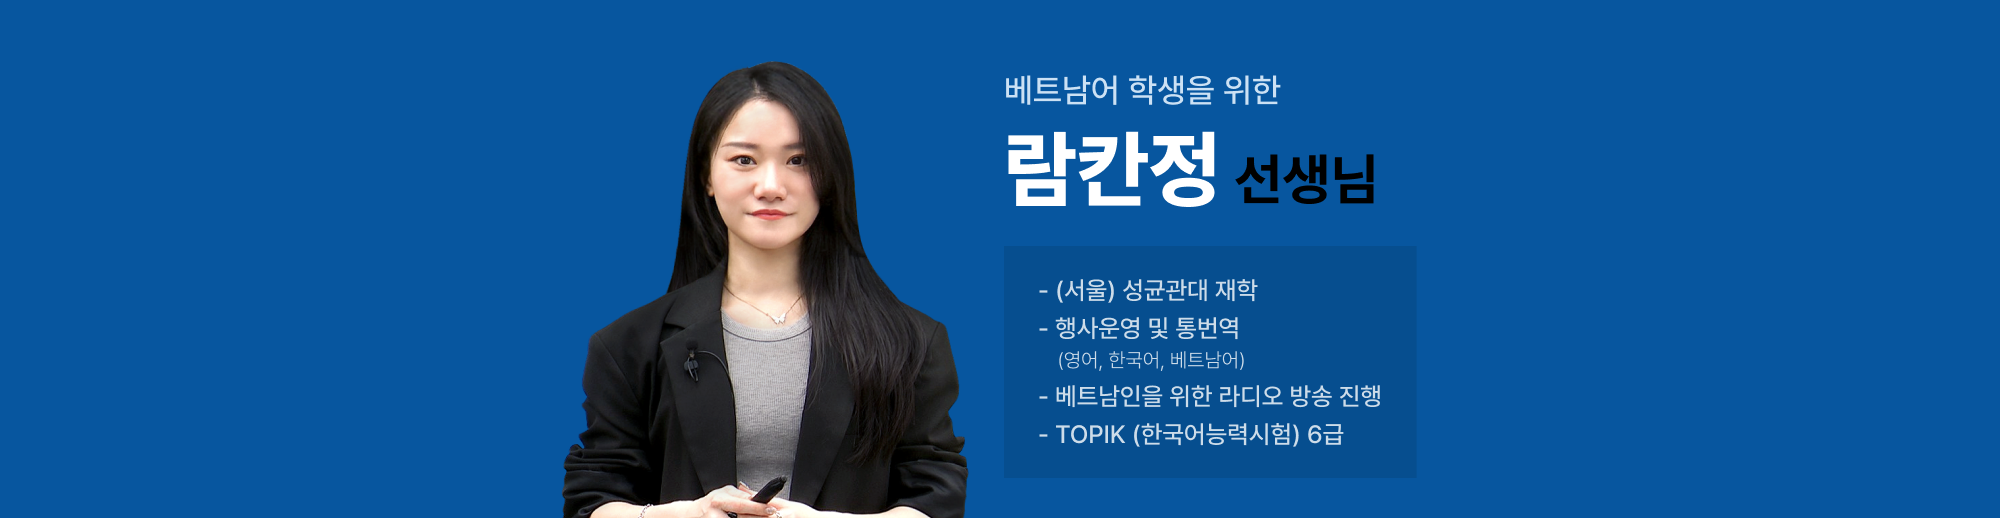 학생들과 소통하는 한국어 강사 람칸정쌤 입니다